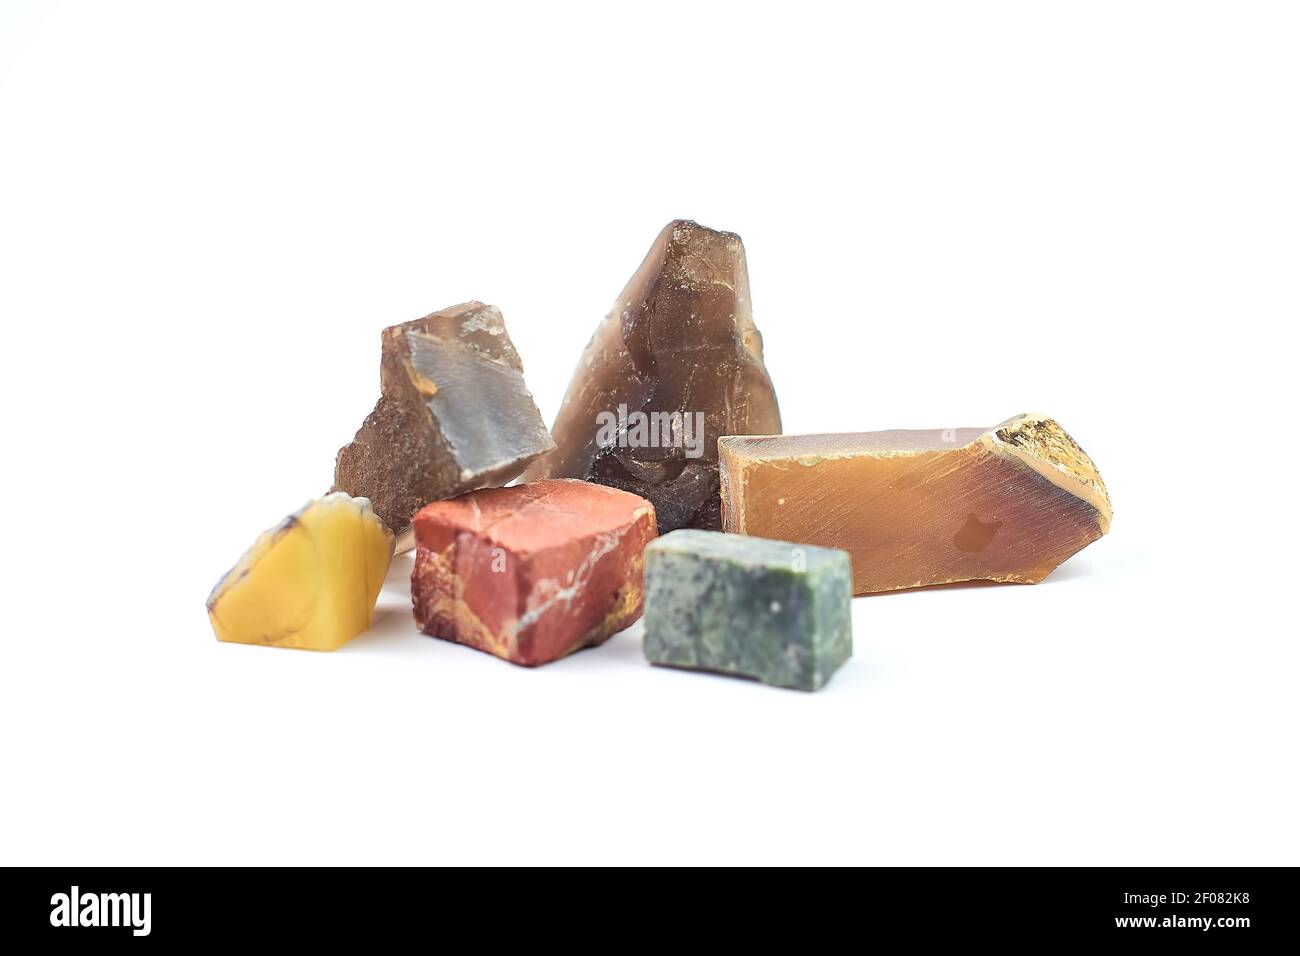 collezione di minerali colorati isolati su sfondo bianco - concetto geologico Foto Stock